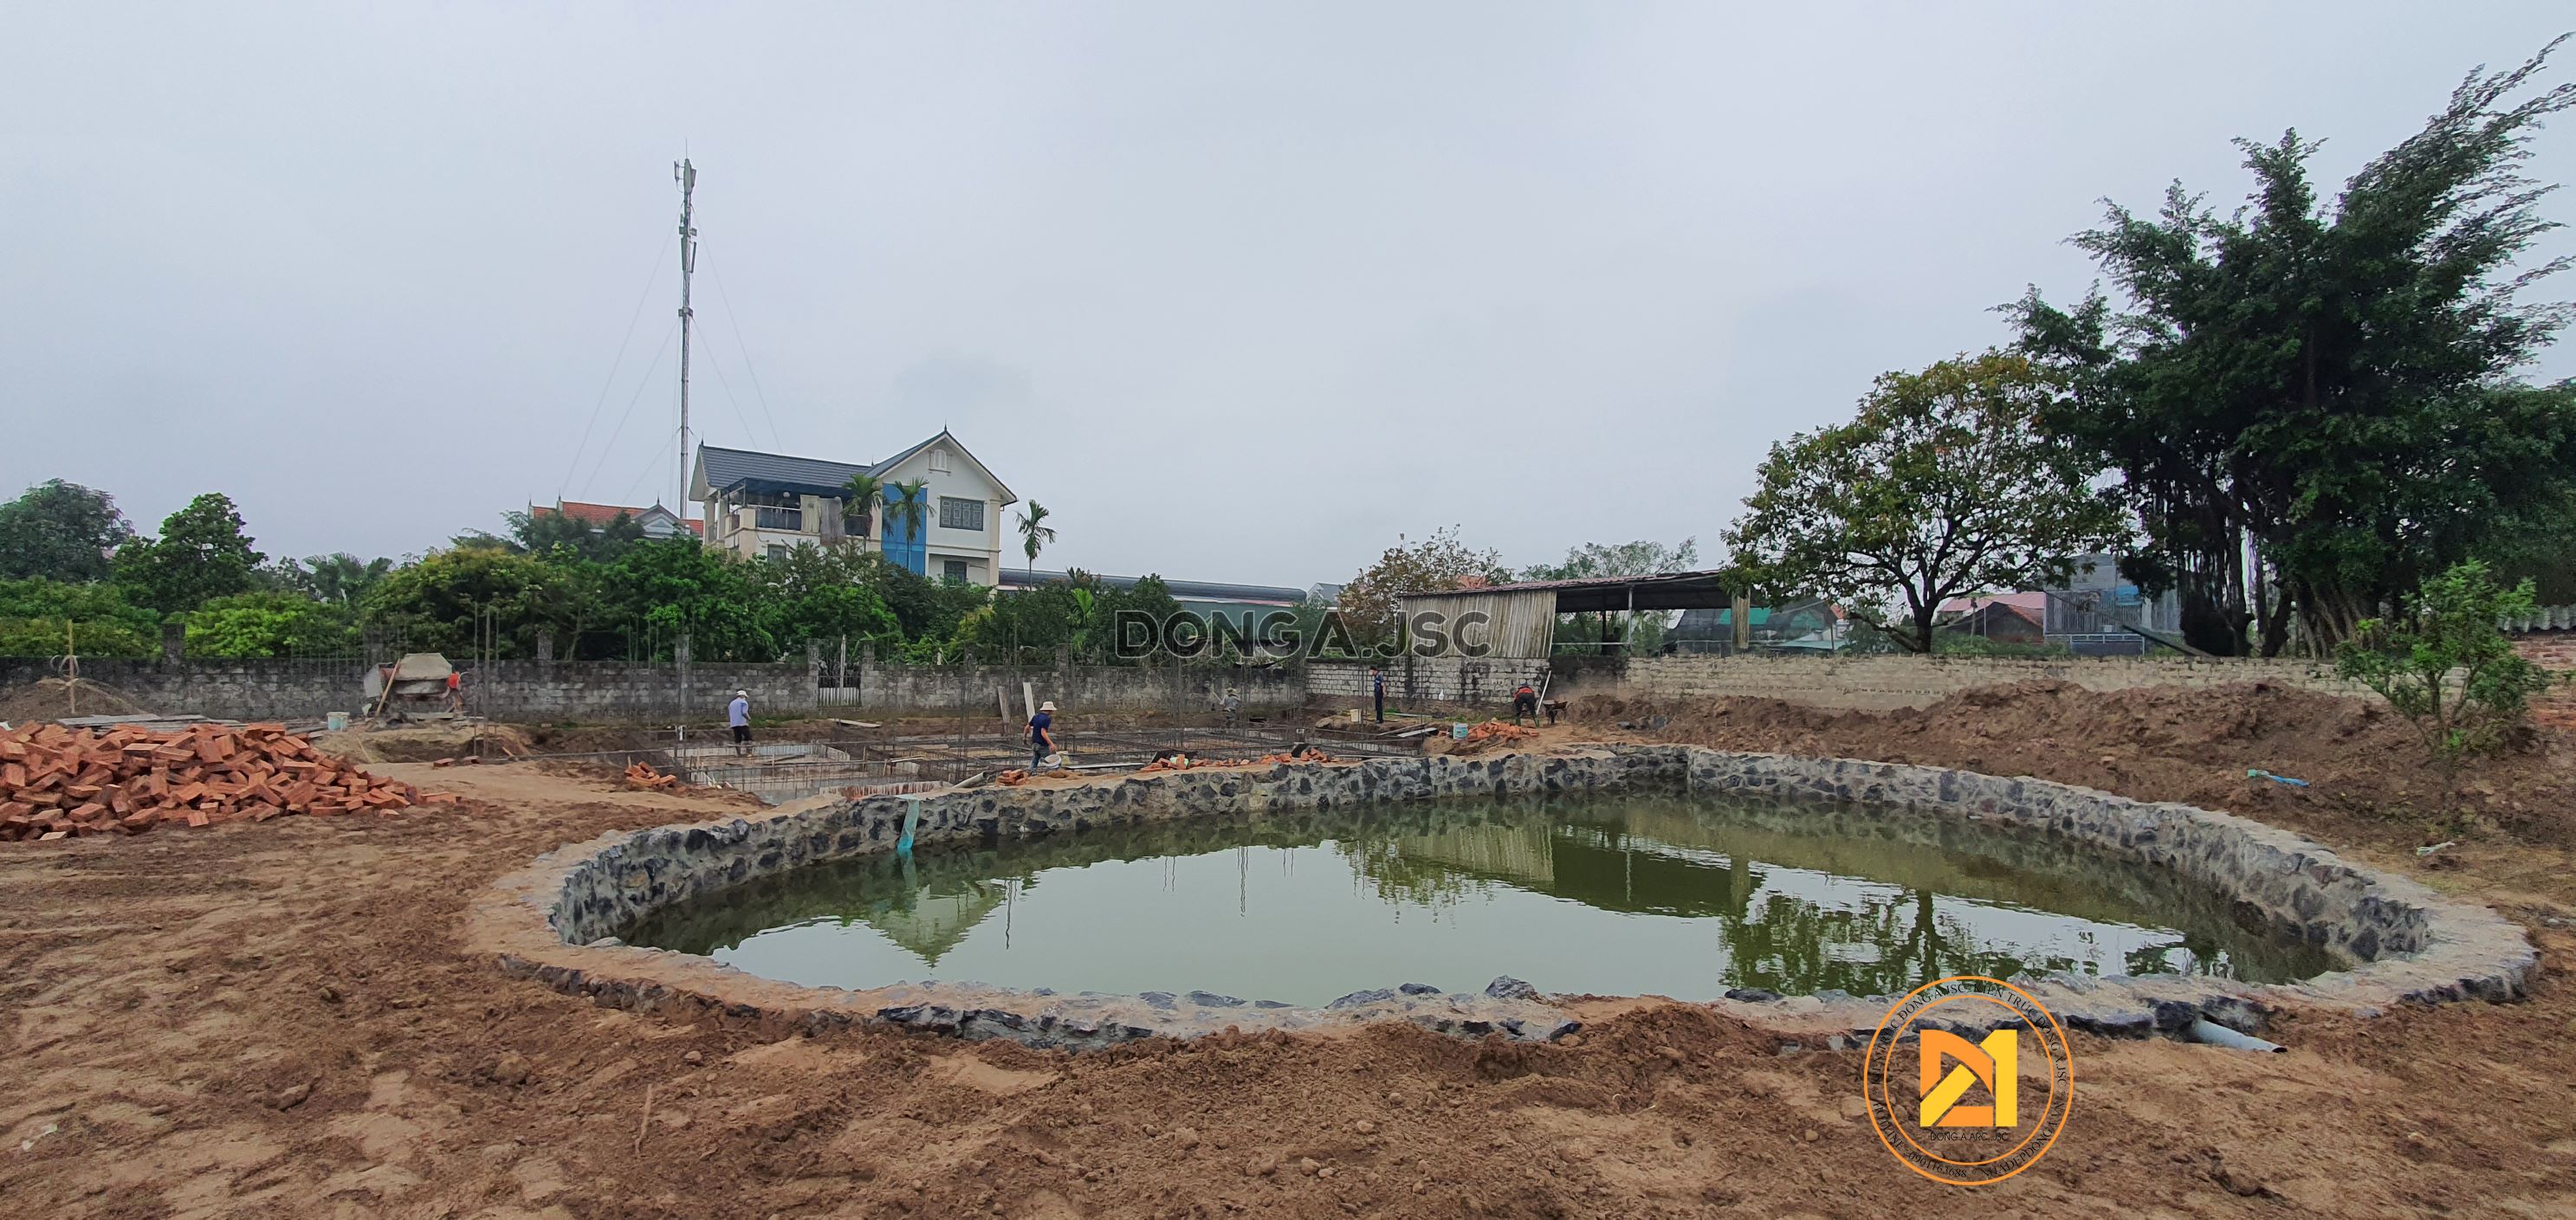 Hình ảnh thực tế thi công biệt thự vườn 1 hiện đại ở Thường Tín, Hà Nội